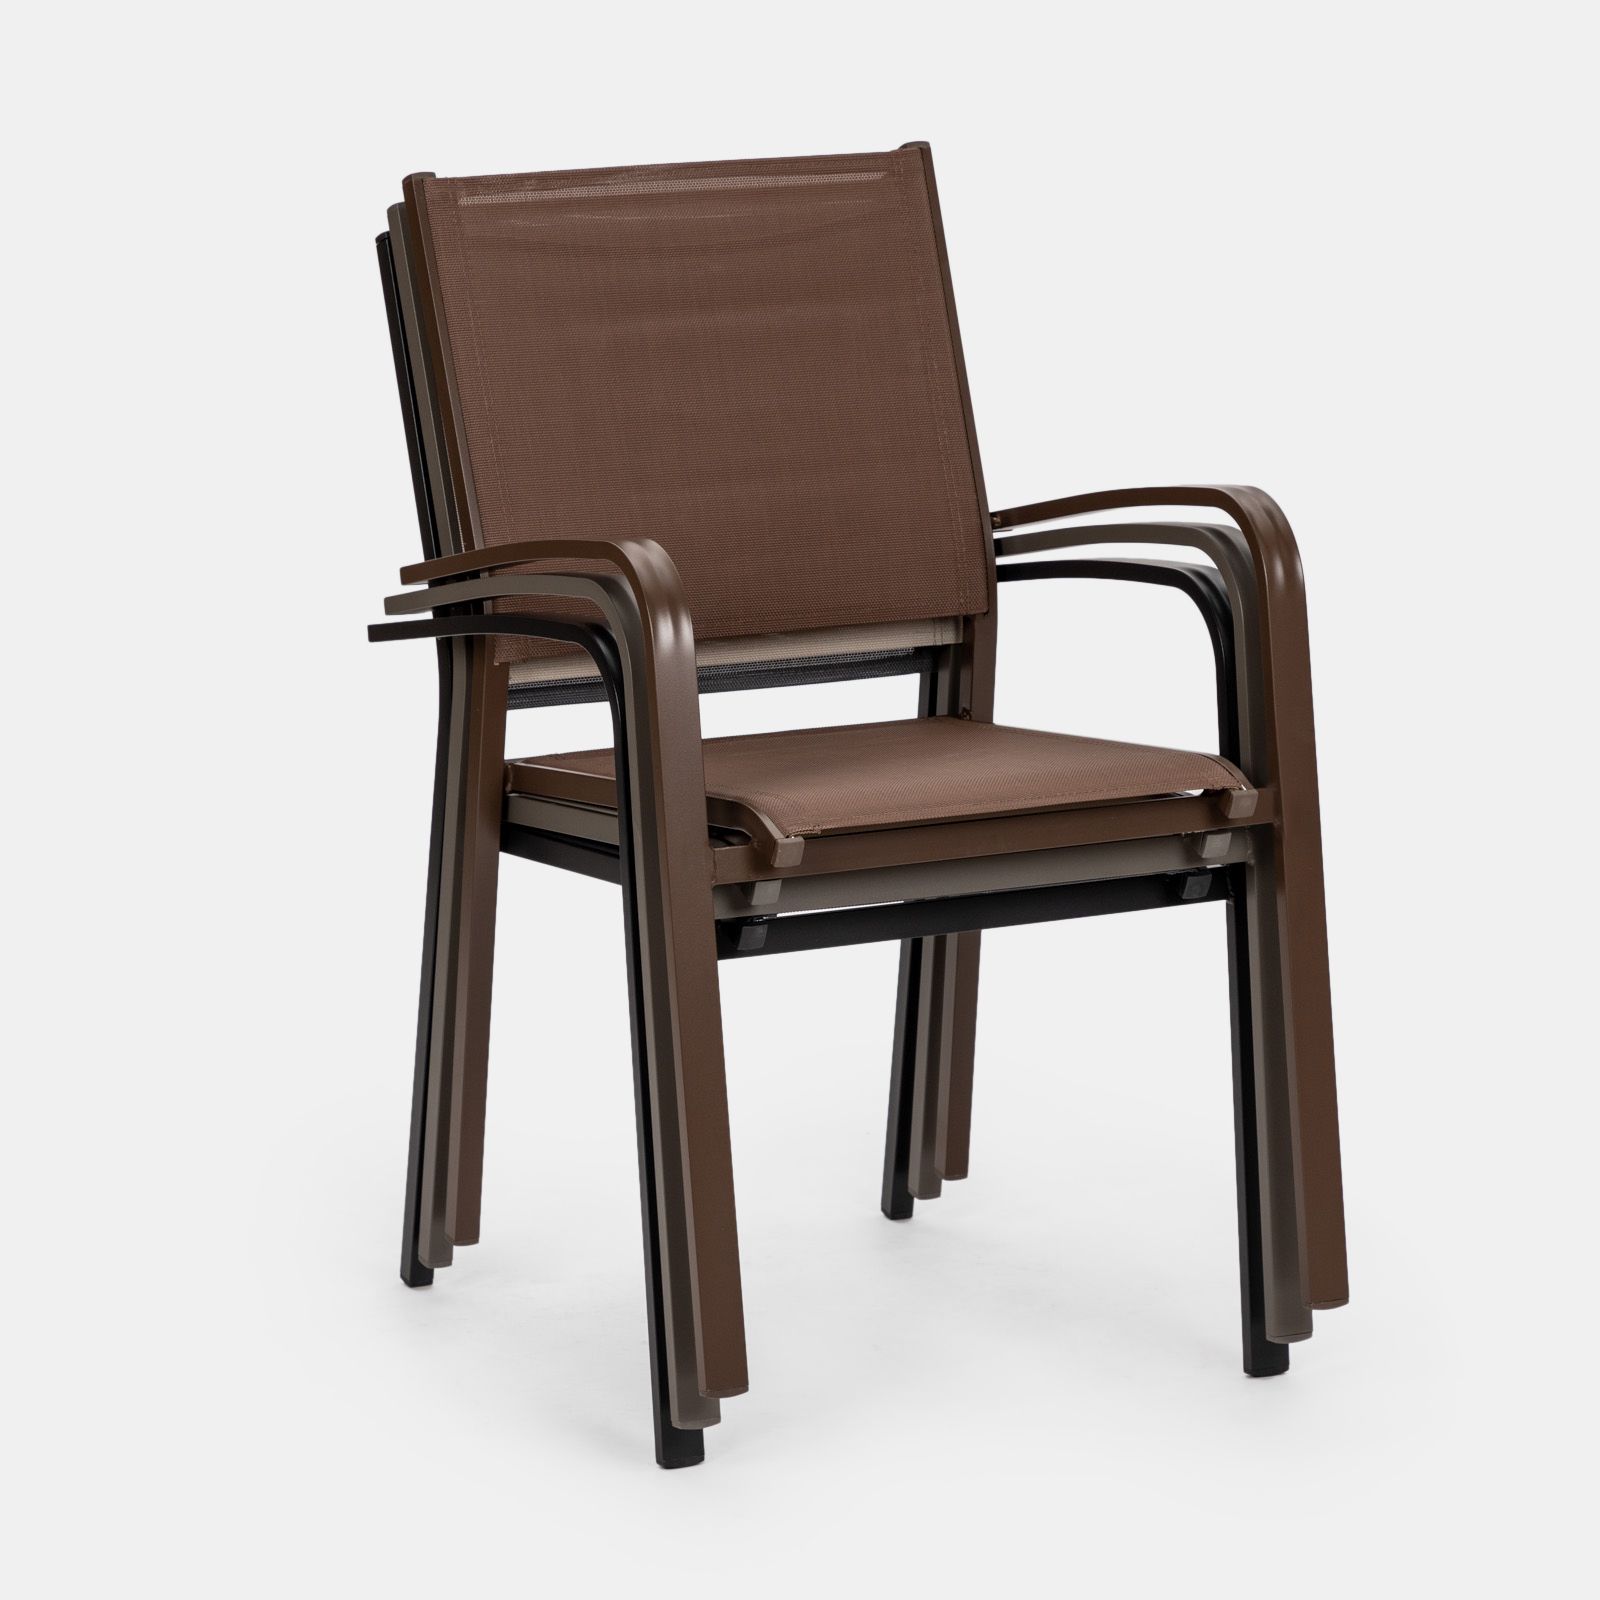 EVOL in alluminio e legno sedia con braccioli impilabile per bar